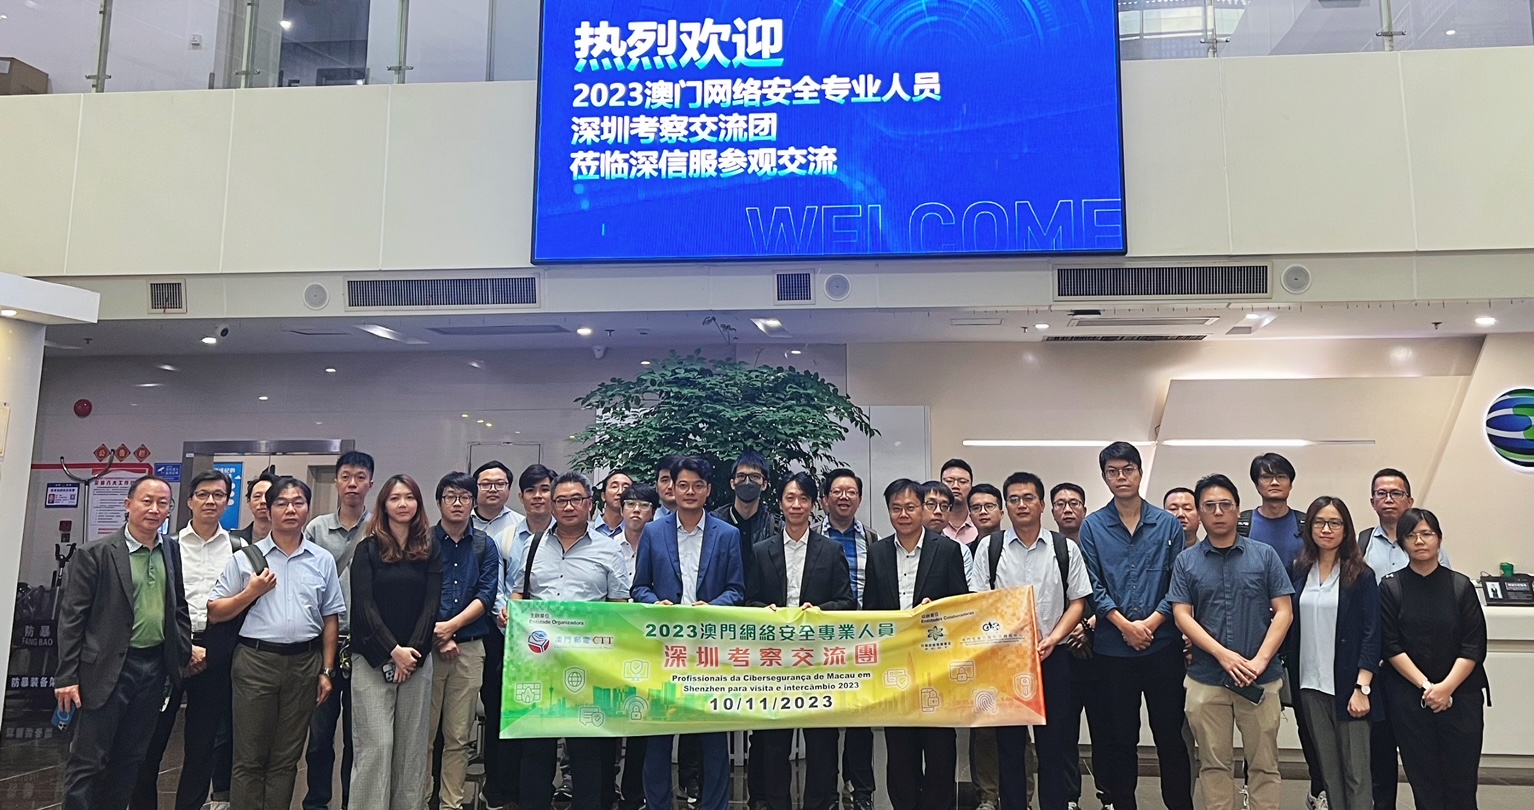 Iniciativa intitulada “Profissionais da Cibersegurança de Macau em Shenzhen para visita e intercâmbio 2023”, organizada pelos CTT